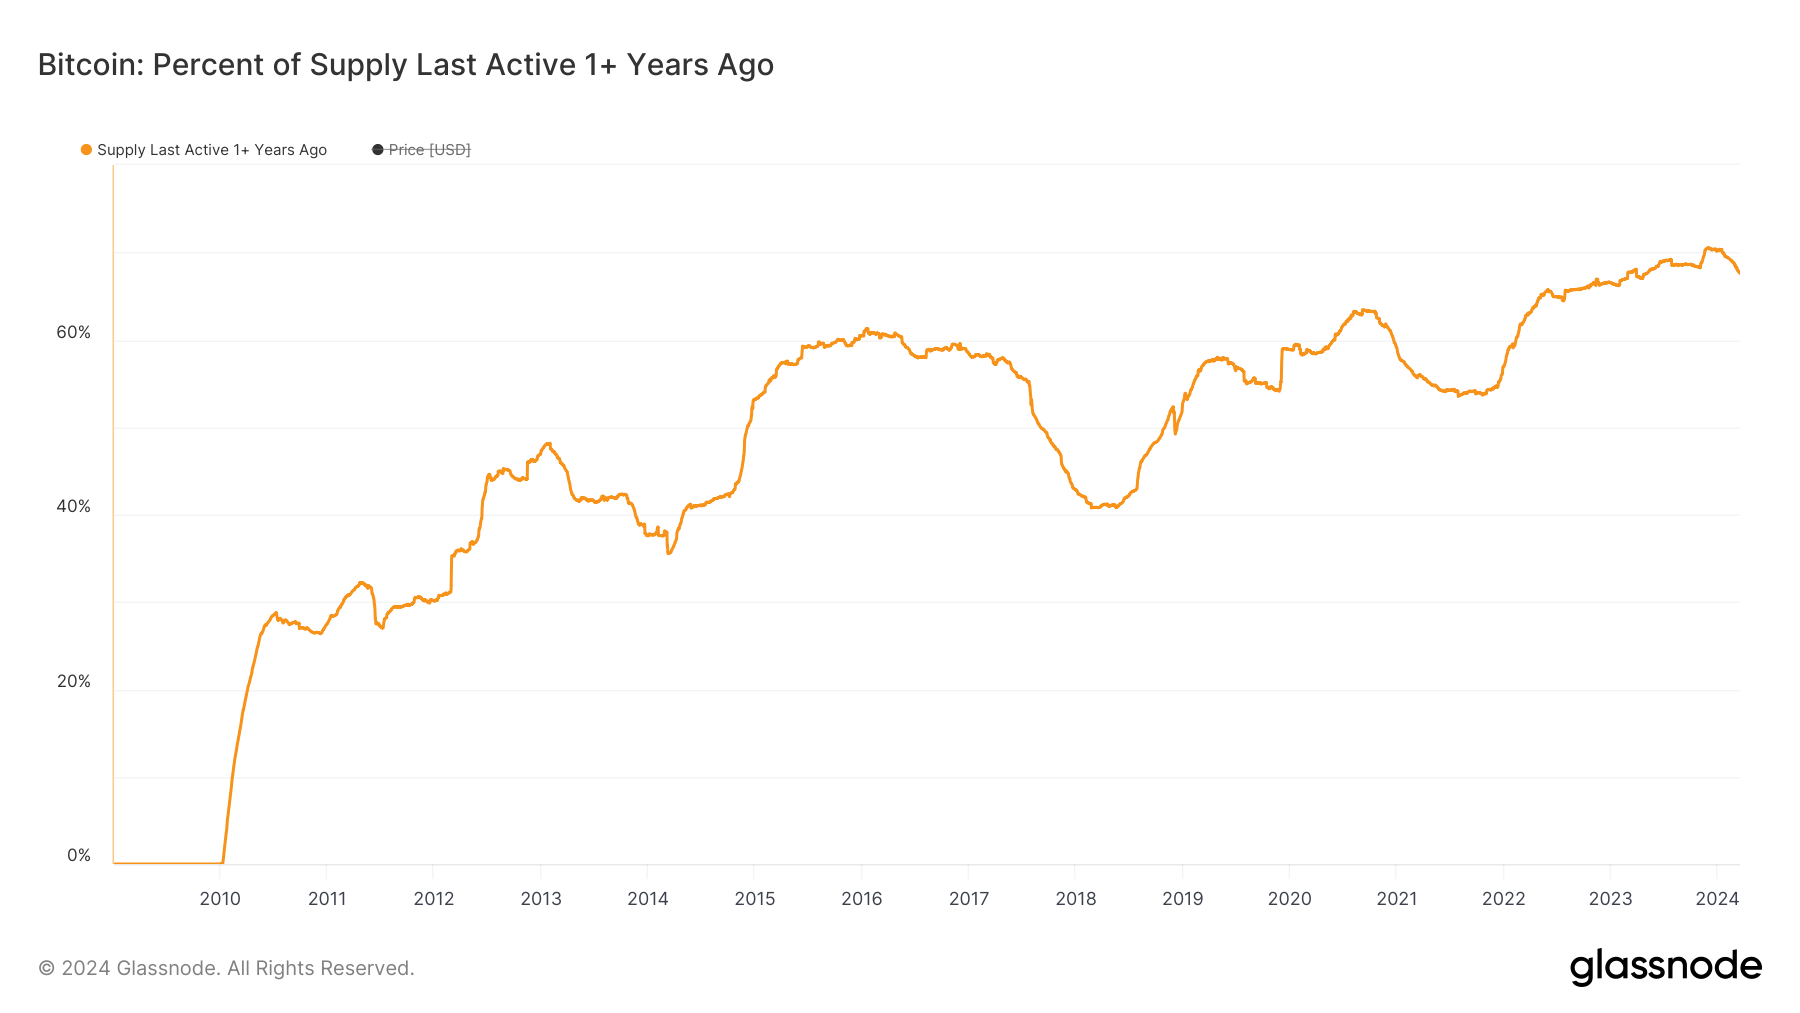 比特幣最後活躍供應量百分比是一年多前圖表